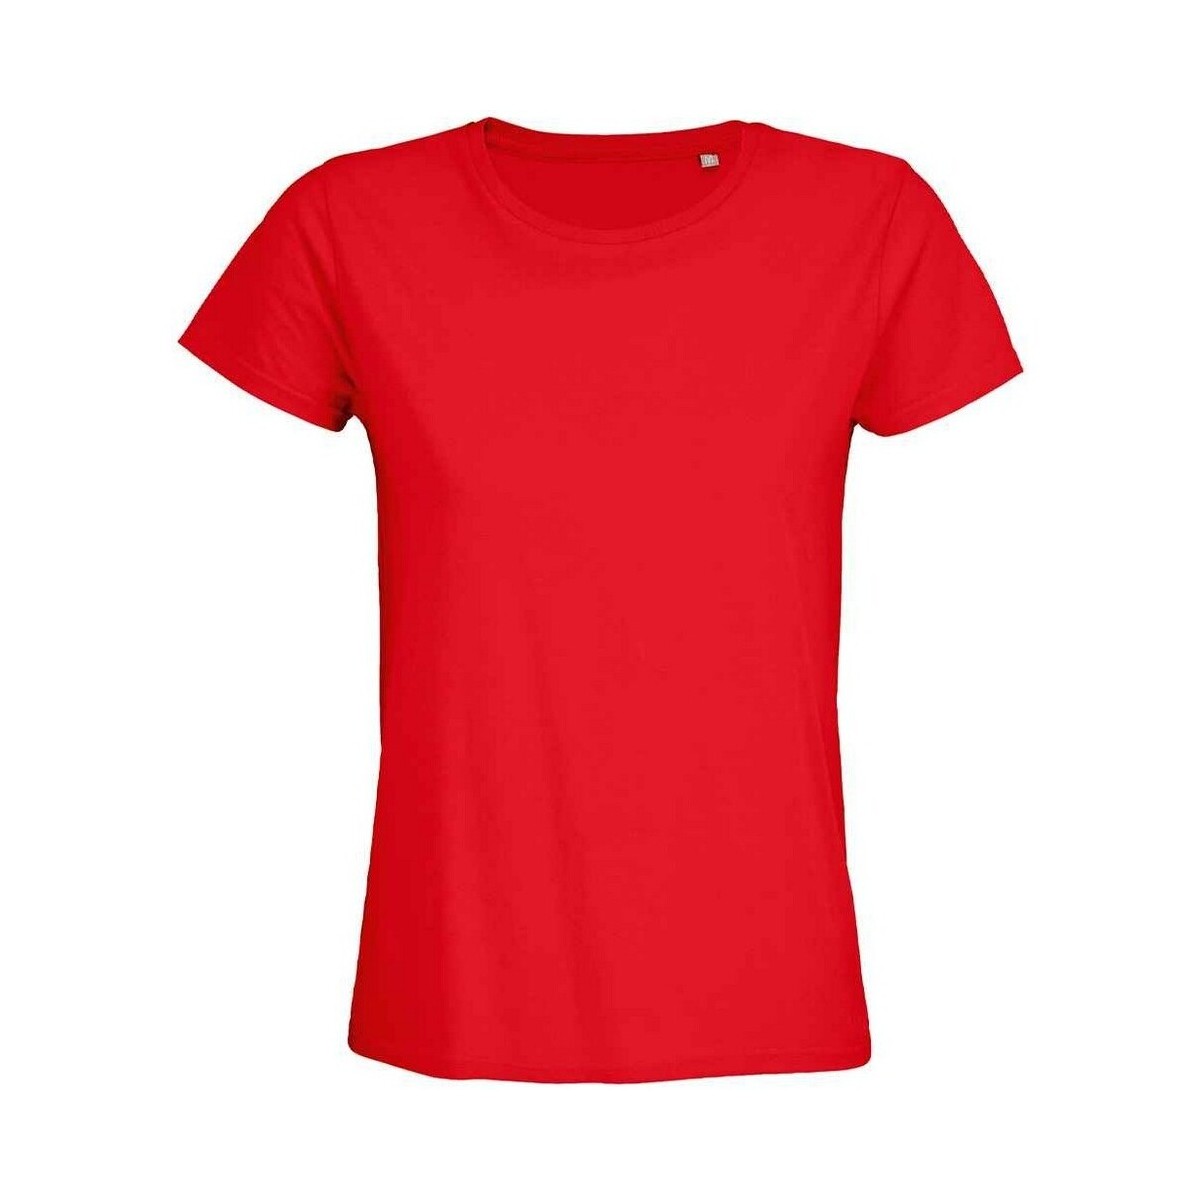 Vêtements Femme T-shirts manches longues Sols 3579 Rouge